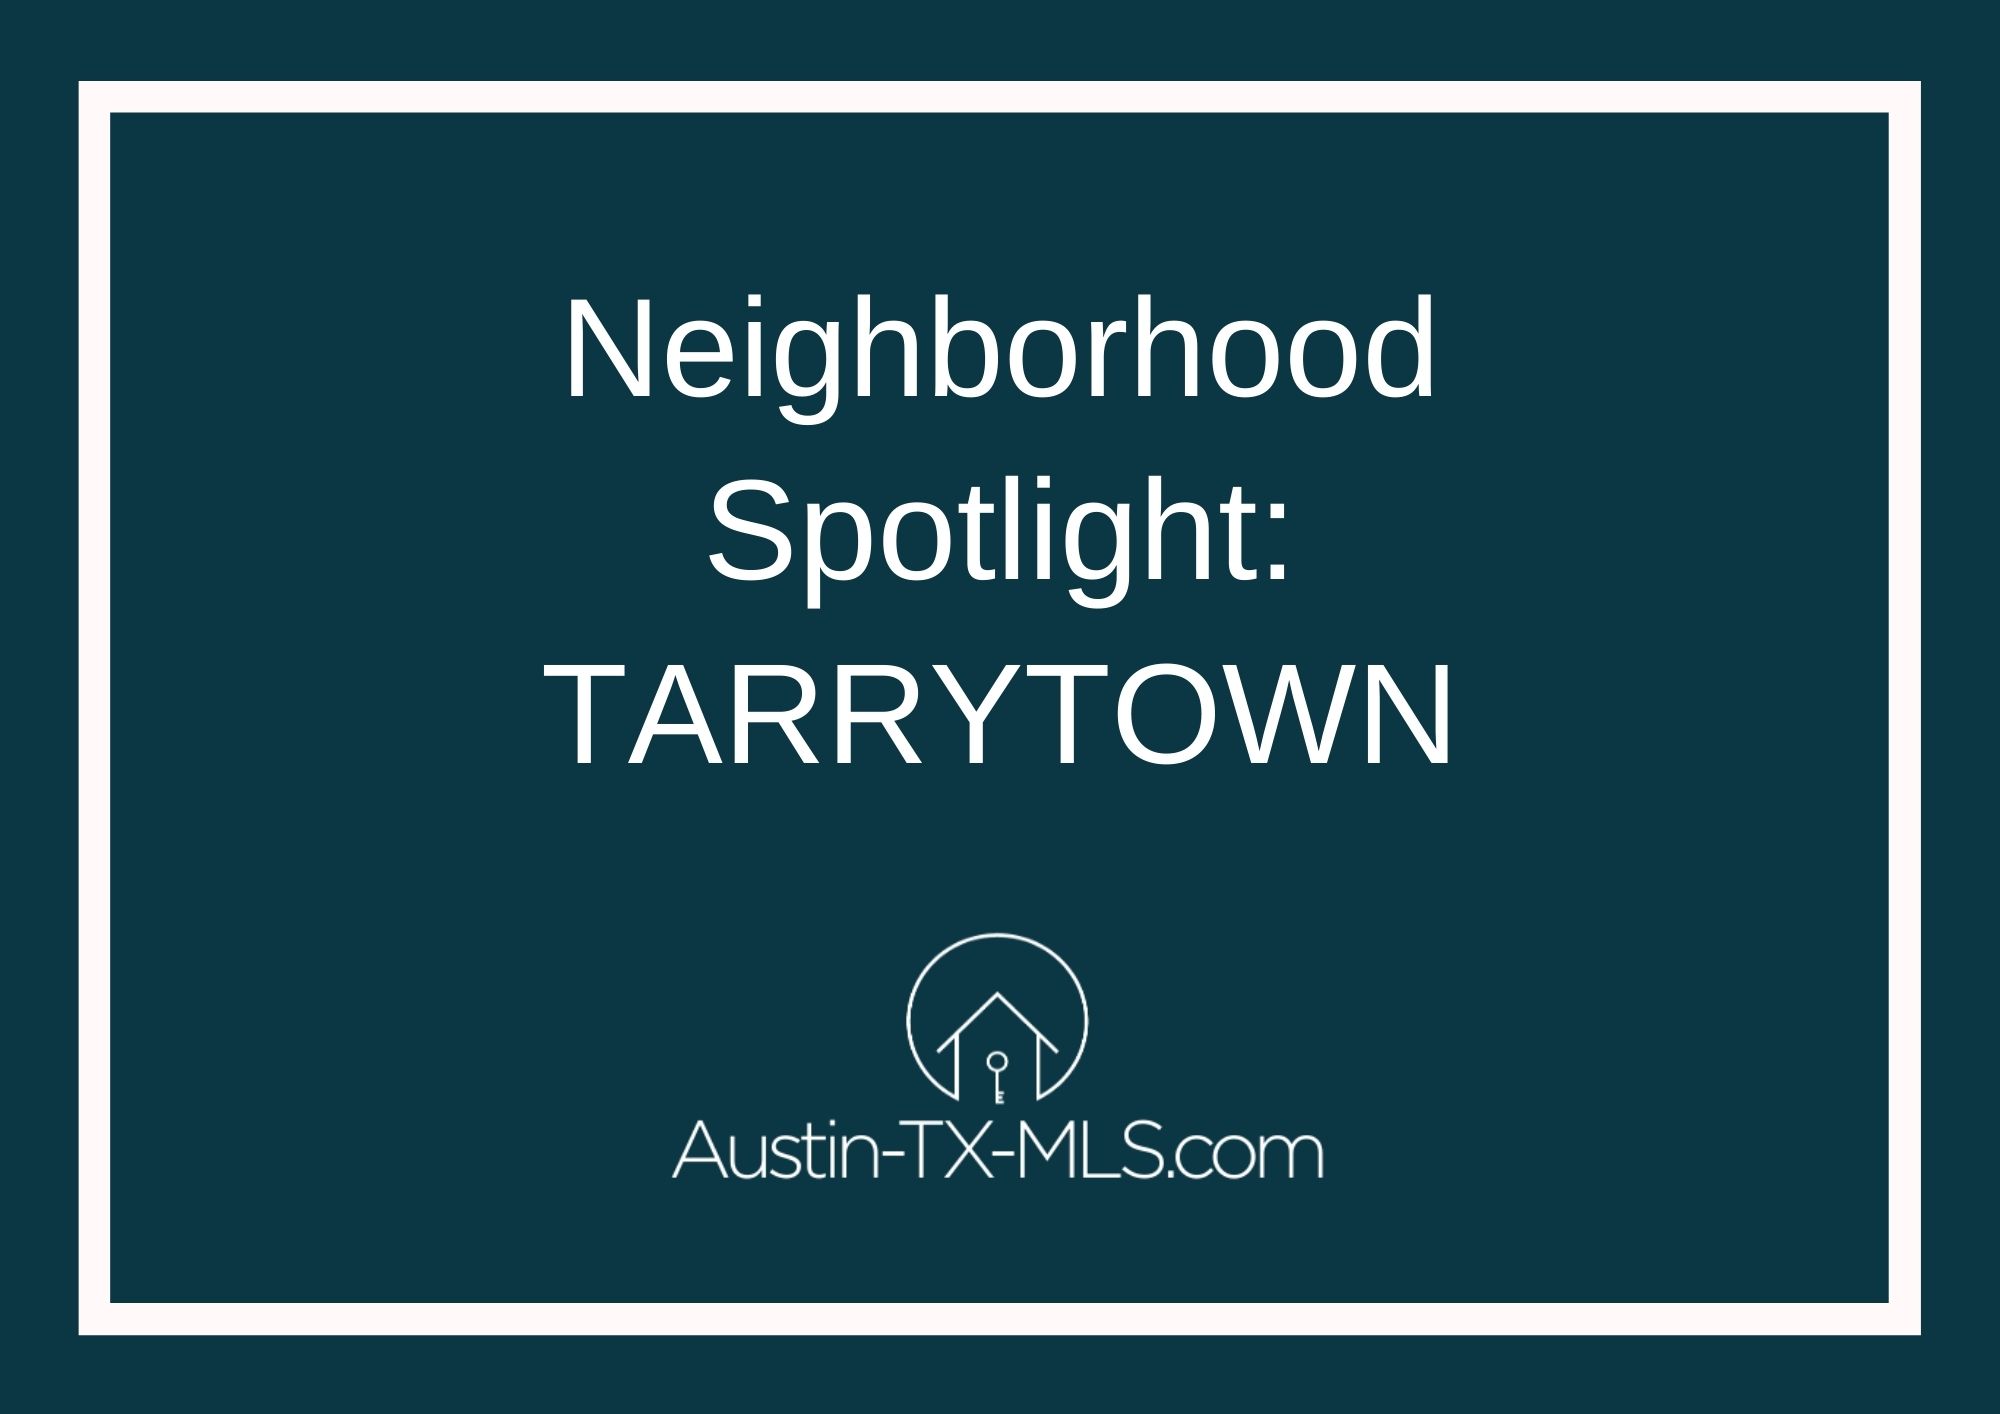 Tarrytown Neighborhood Spotlight Austin Texas real estate